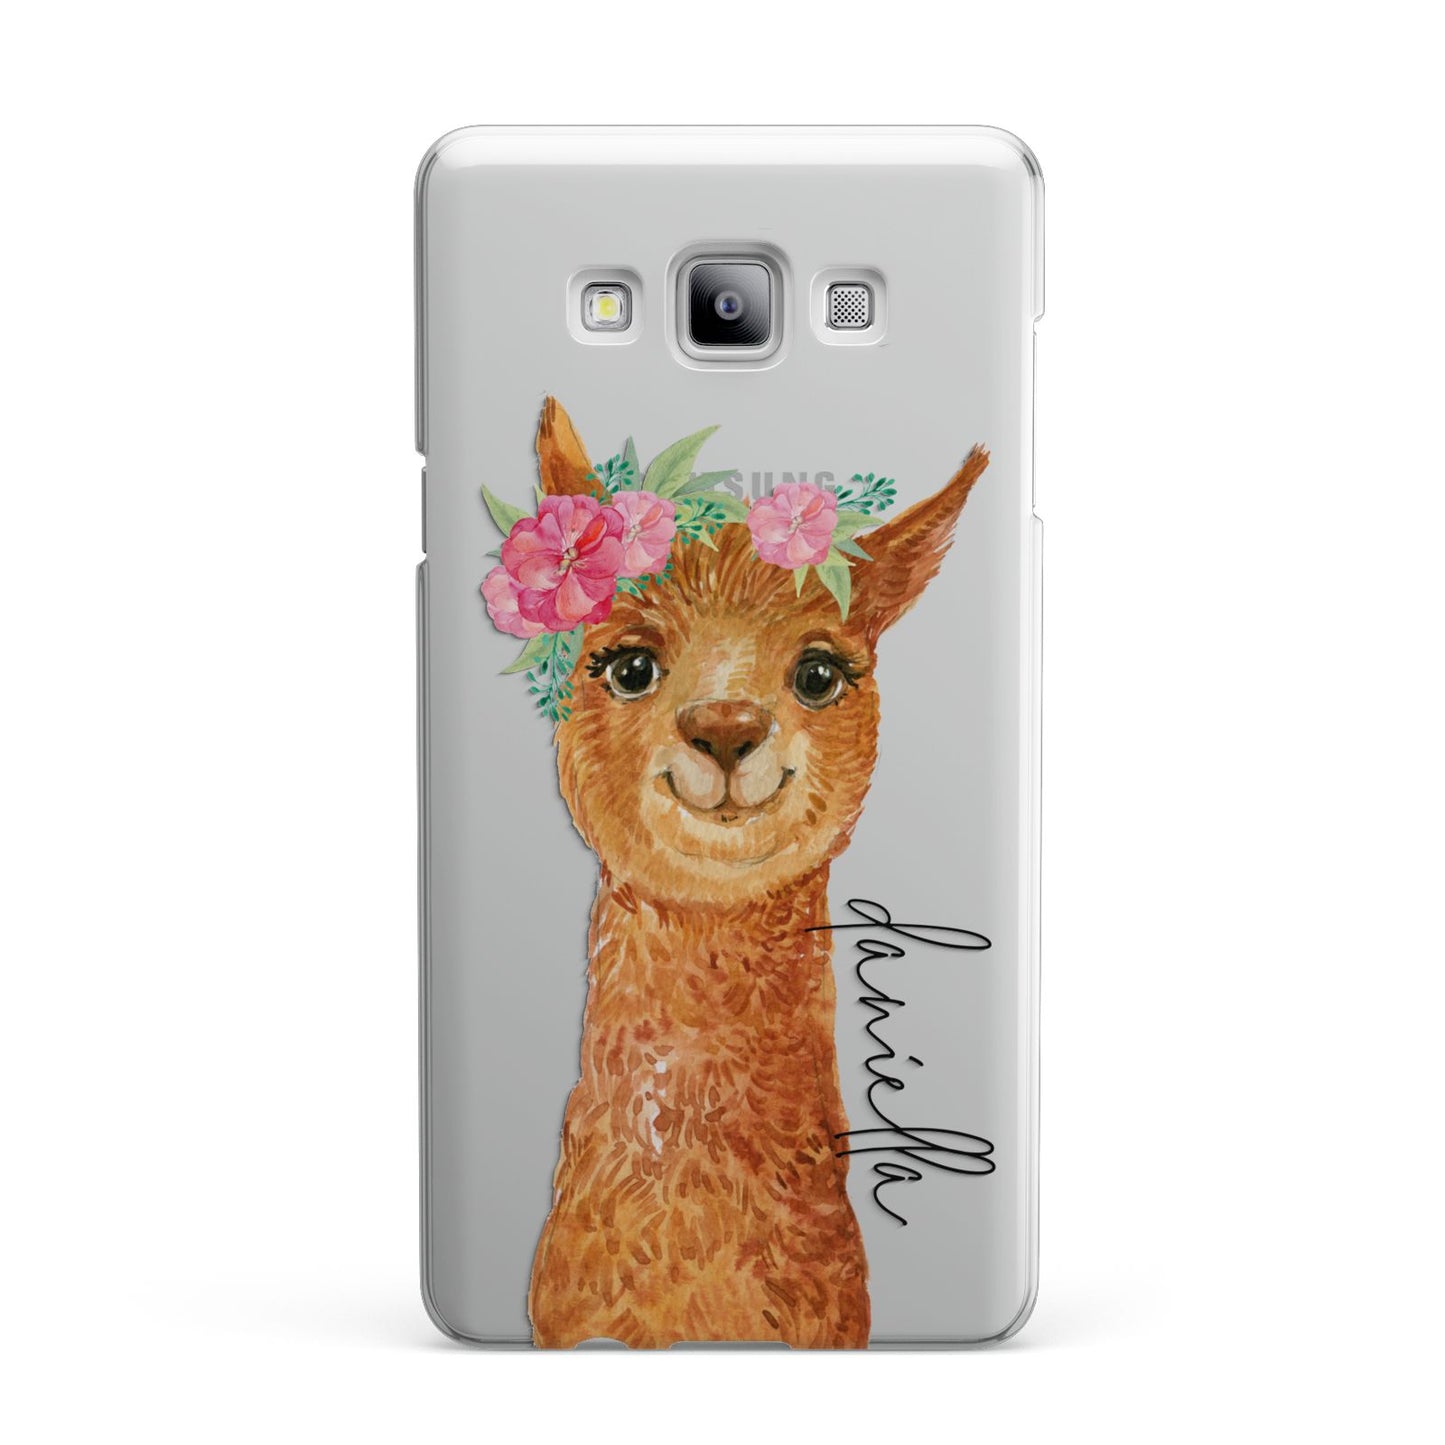 Personalised Llama Samsung Galaxy A7 2015 Case